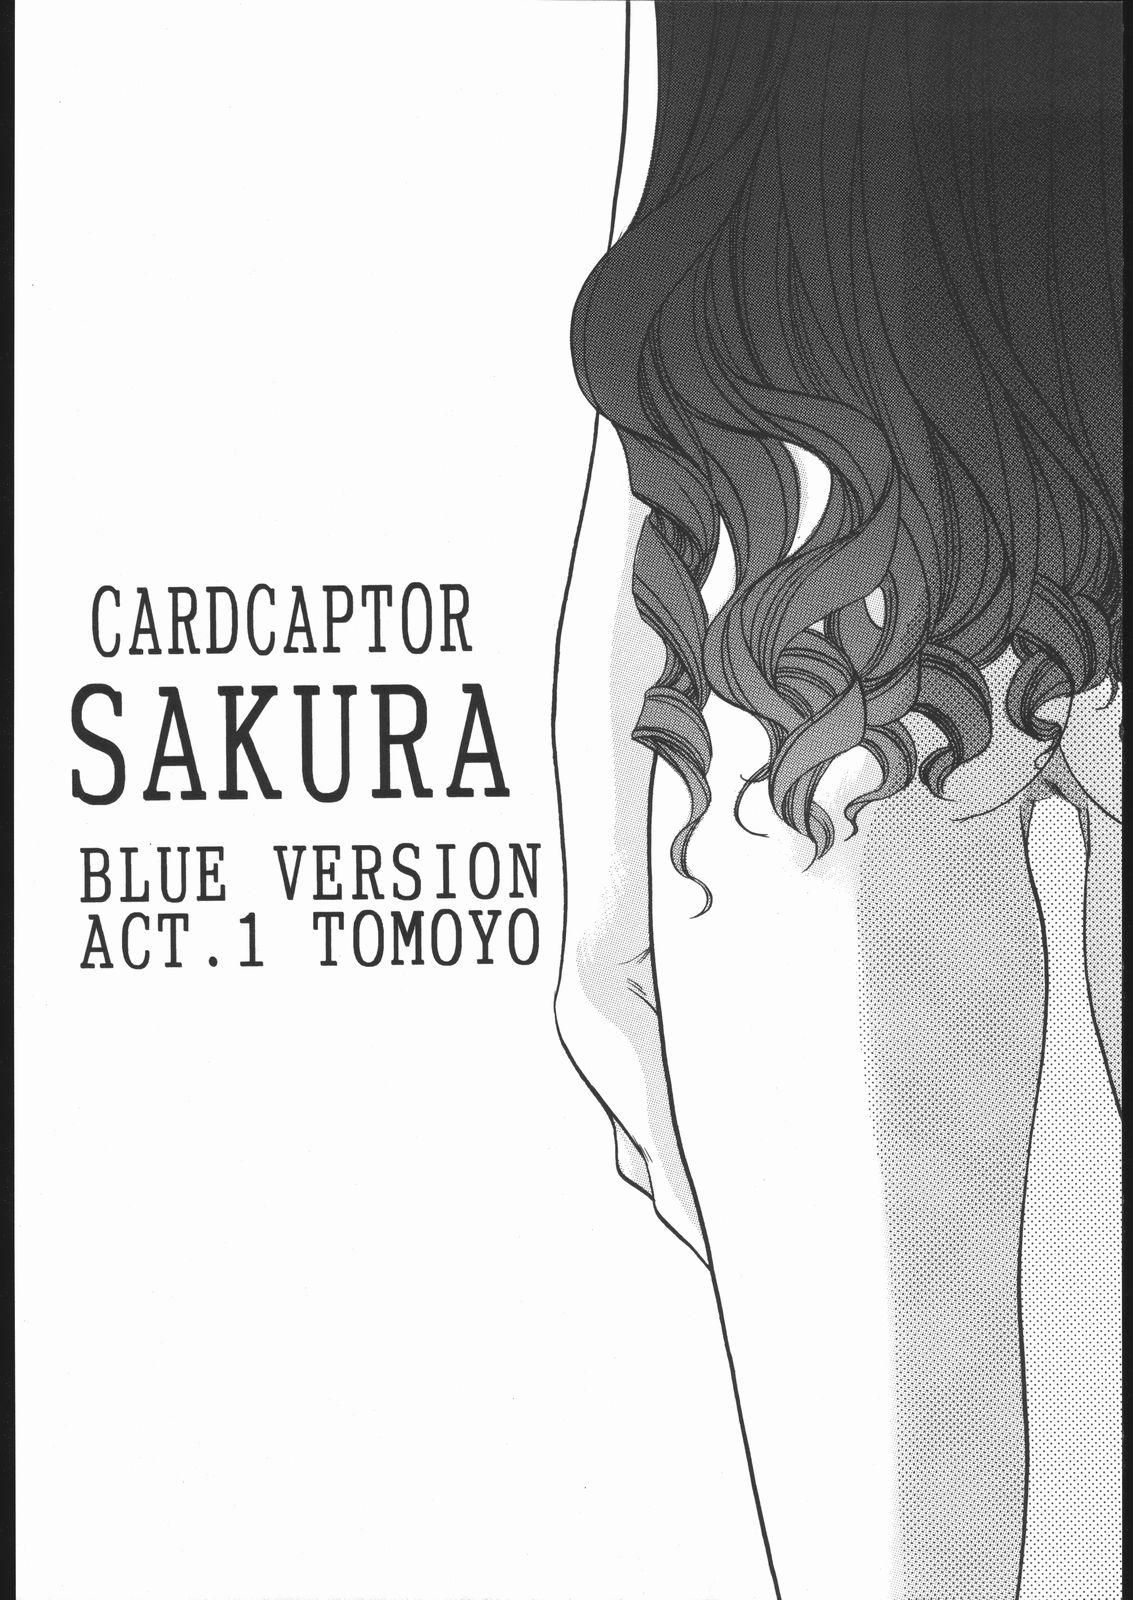 Load Card Captor Sakura Blue Version - Cardcaptor sakura Ballbusting - Page 5